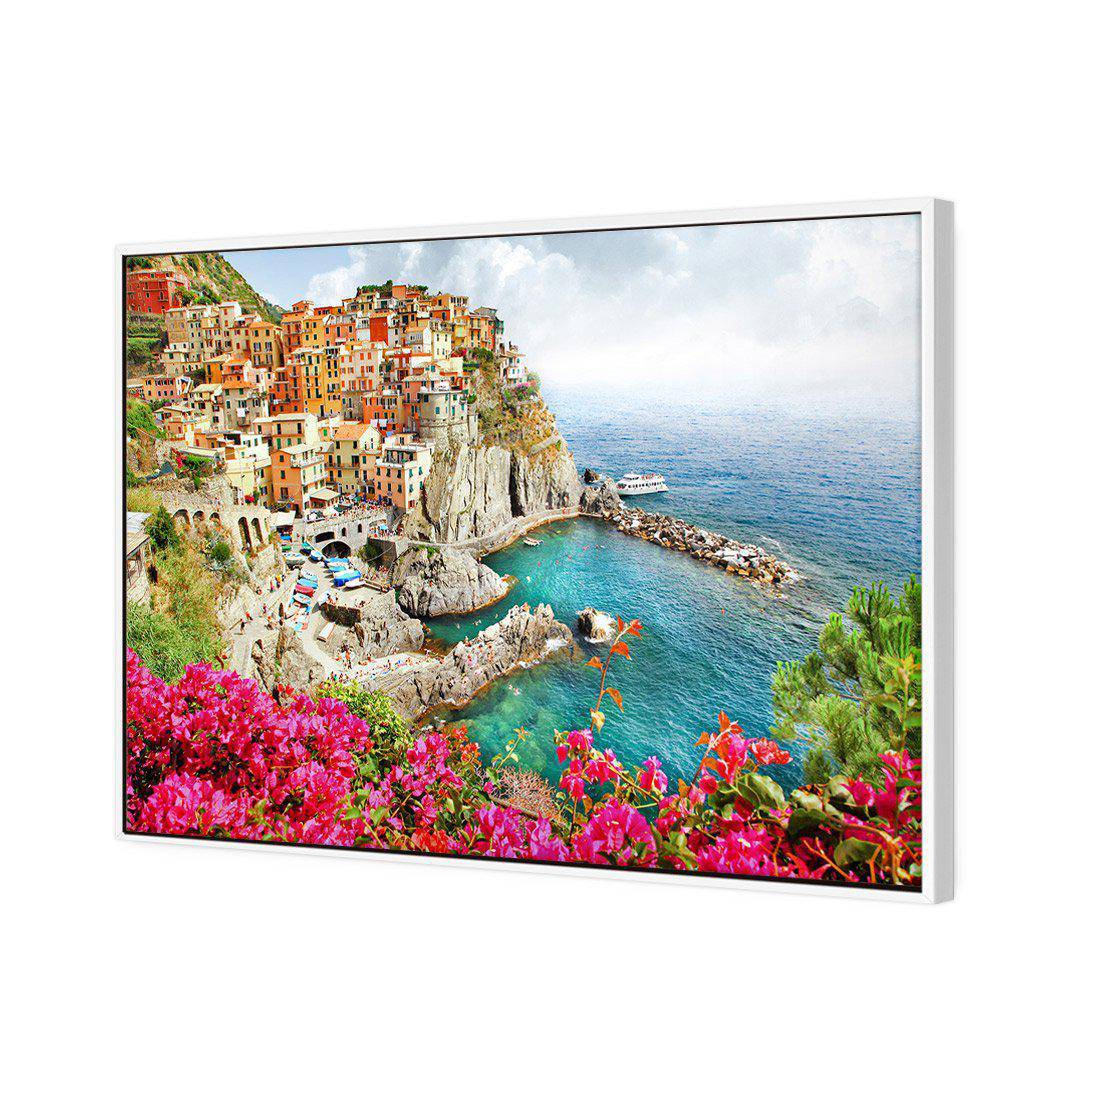 Cinque Terre in Italy Canvas Art-Canvas-Wall Art Designs-45x30cm-Canvas - White Frame-Wall Art Designs